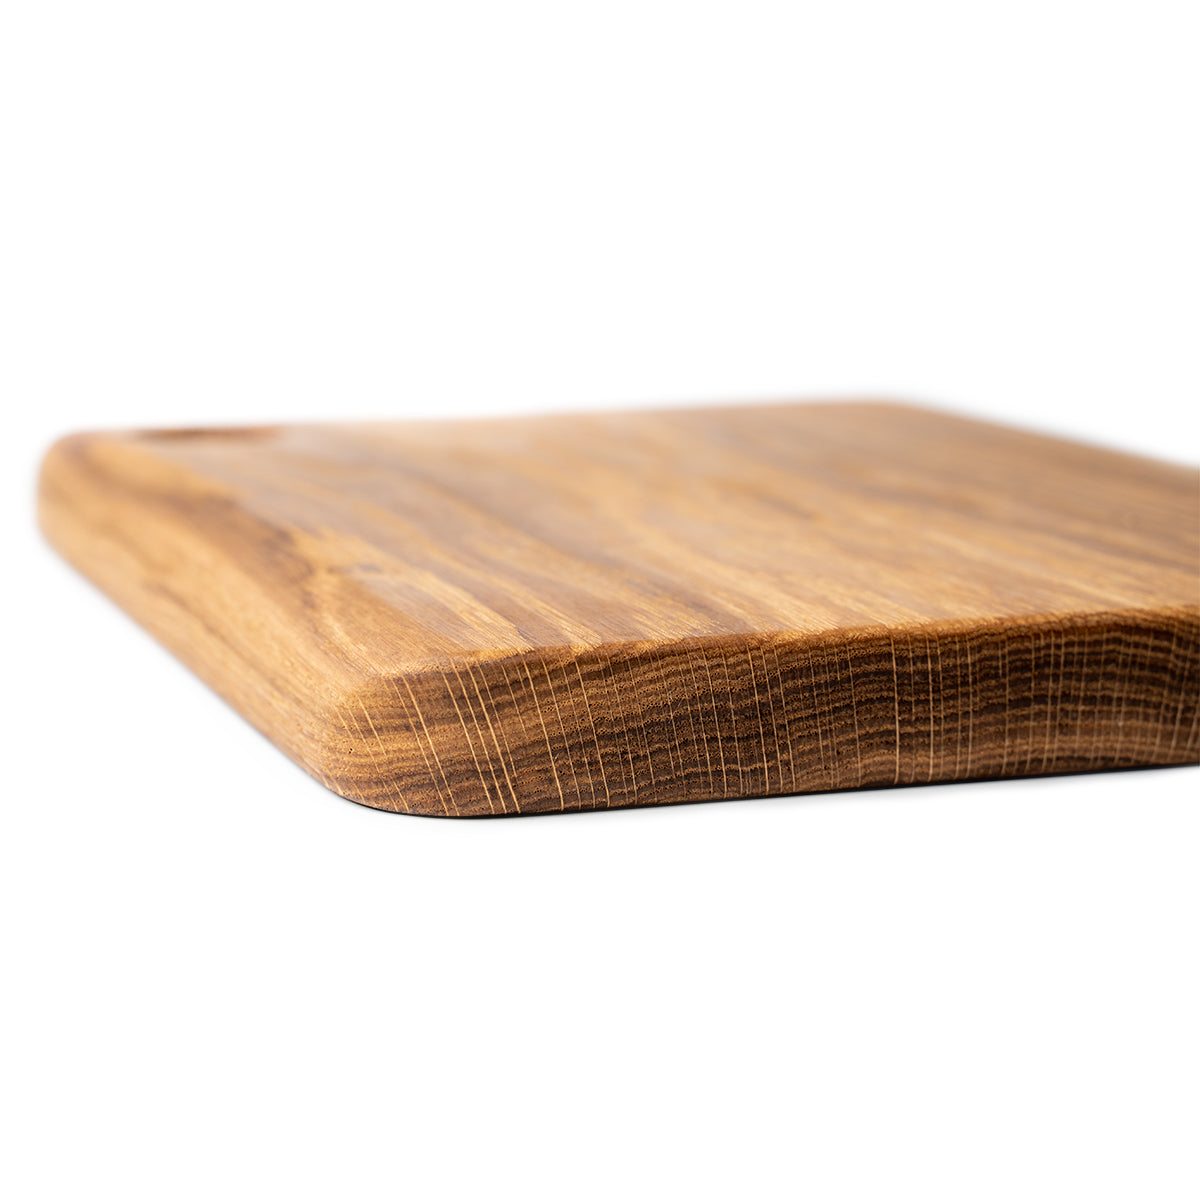 Gruba drewniana deska do krojenia - DĘBOWY MONOLIT